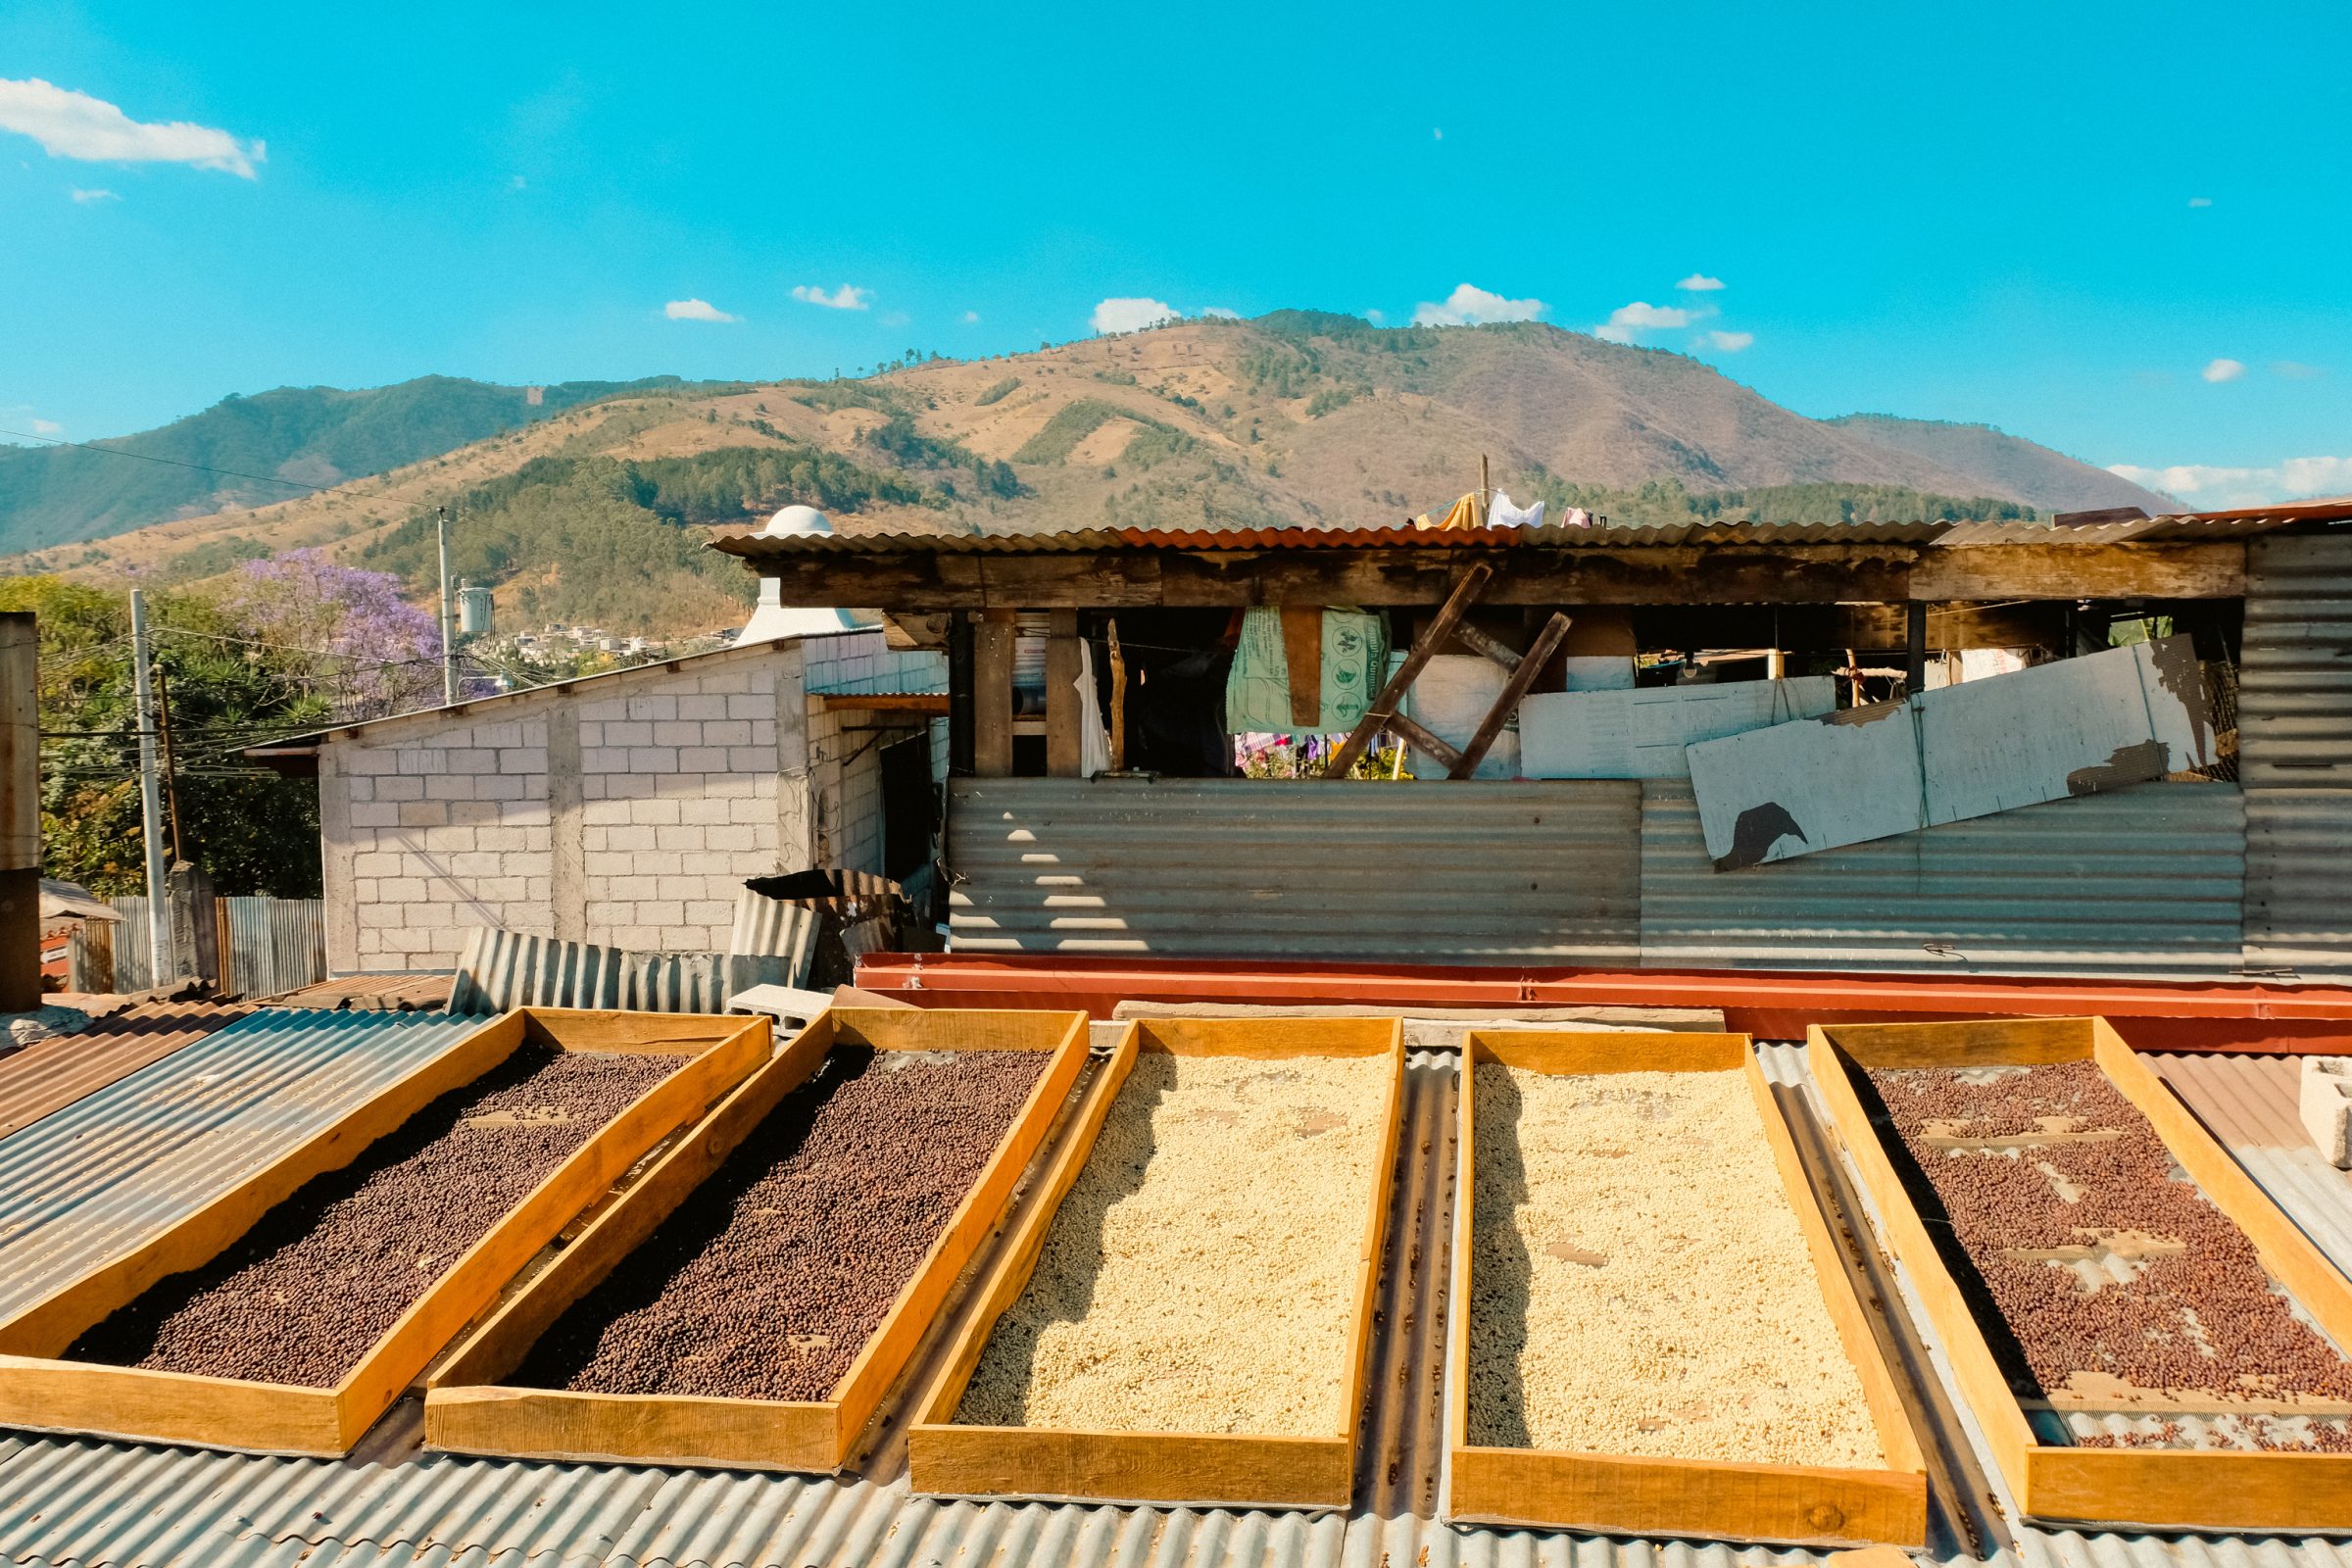 Het drogen van de koffiebonen doen ze in de zon, op de daken van huizen in Antigua